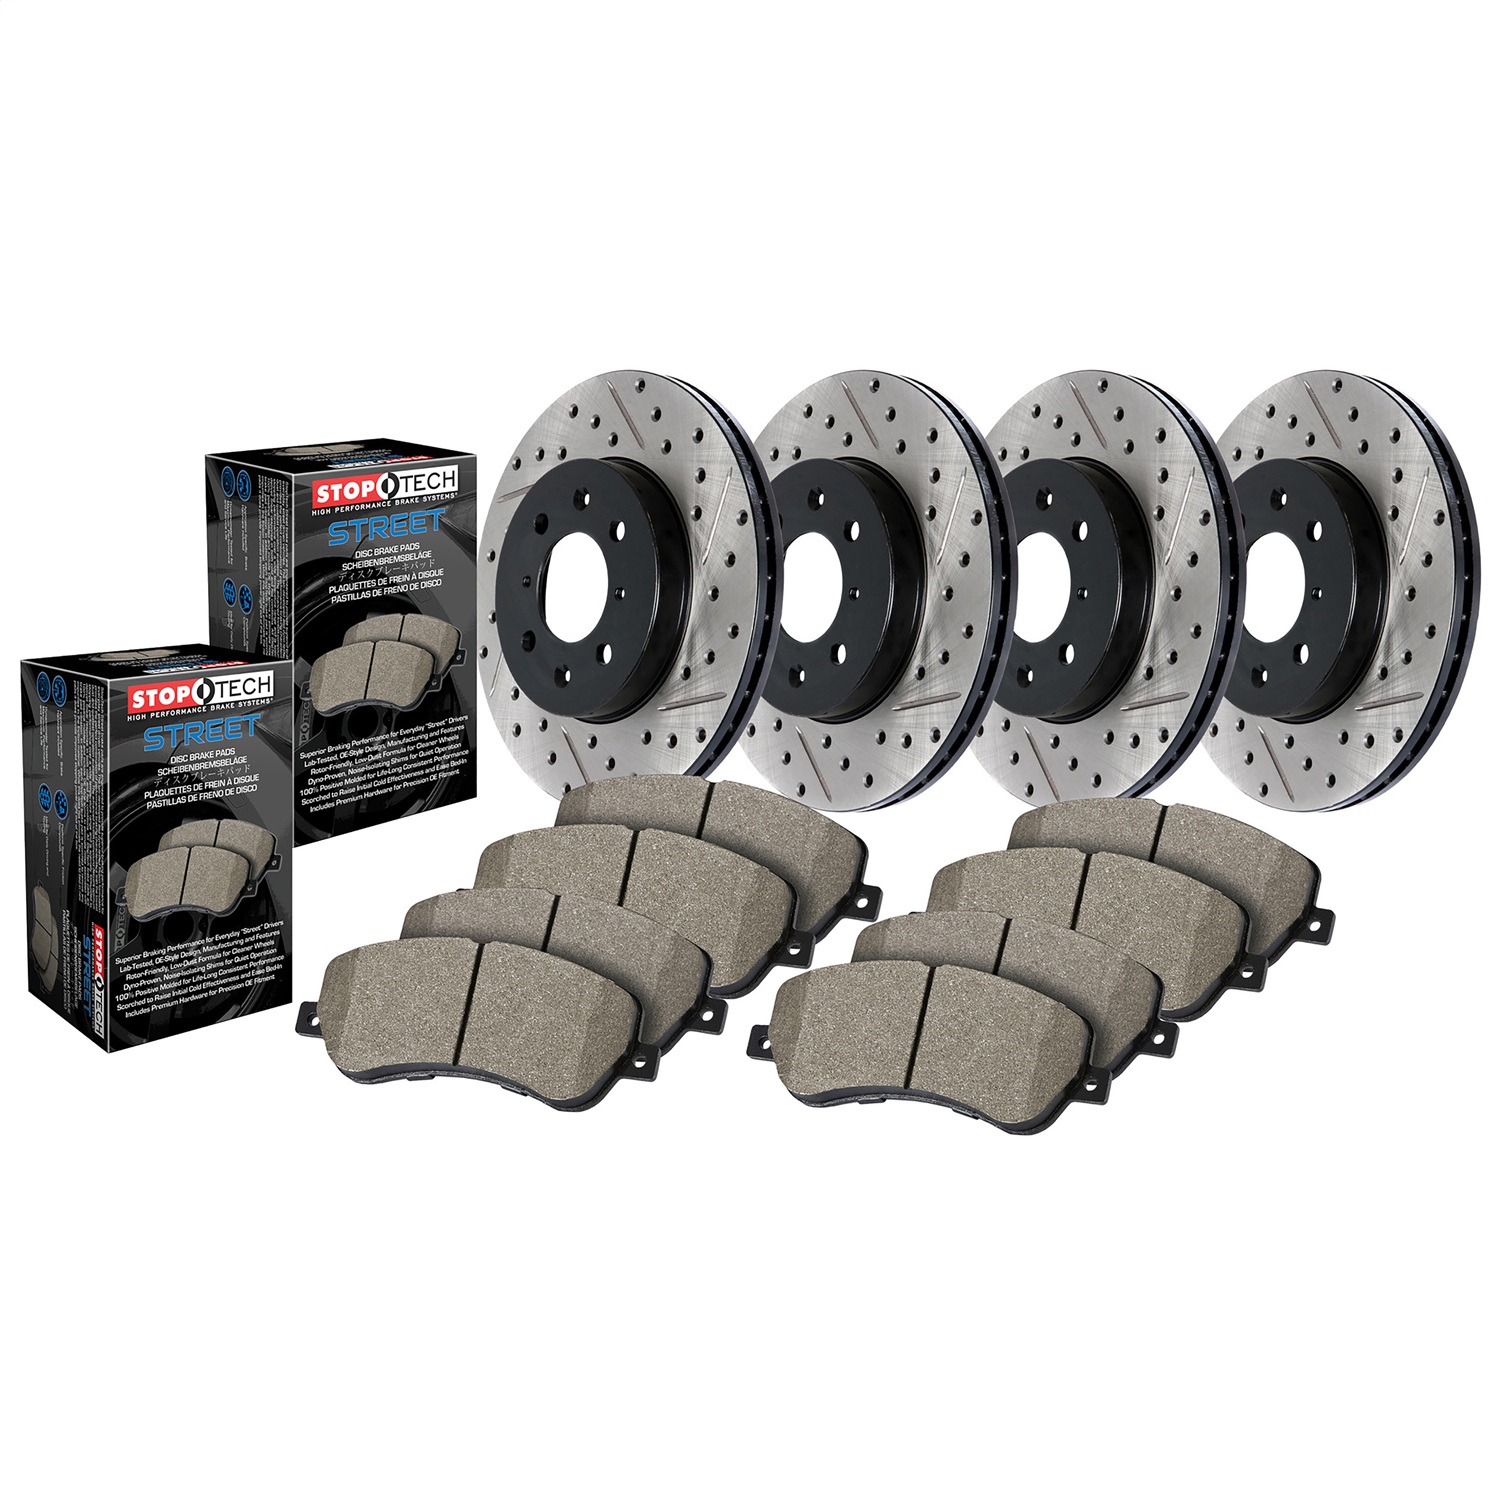 StopTech 935.40024 Disc Brake Upgrade Kit